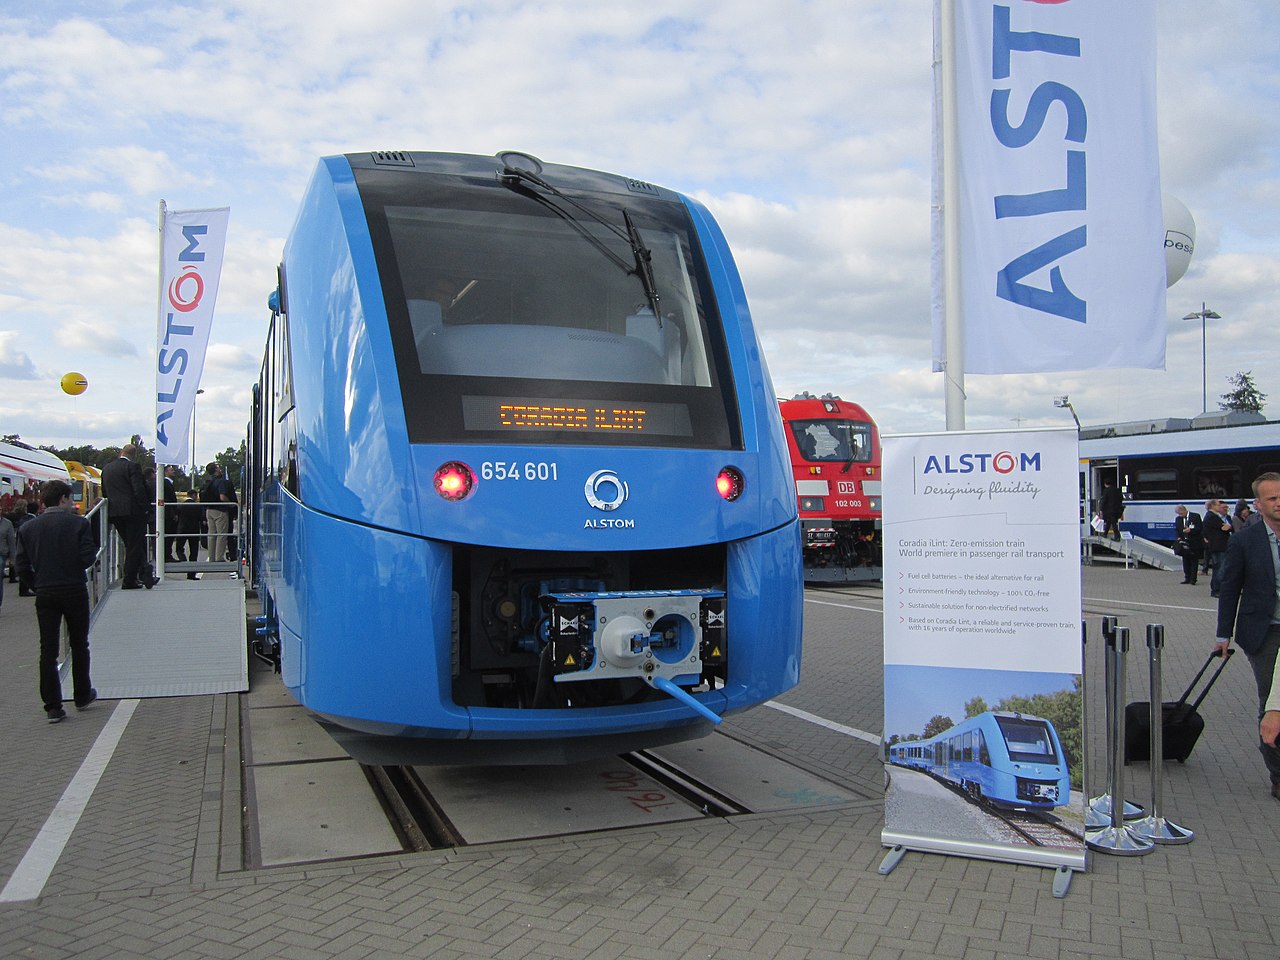 Zughersteller Alstom erwägt deutsche Werke zu schließen – 10.000 Arbeitsplätze betroffen